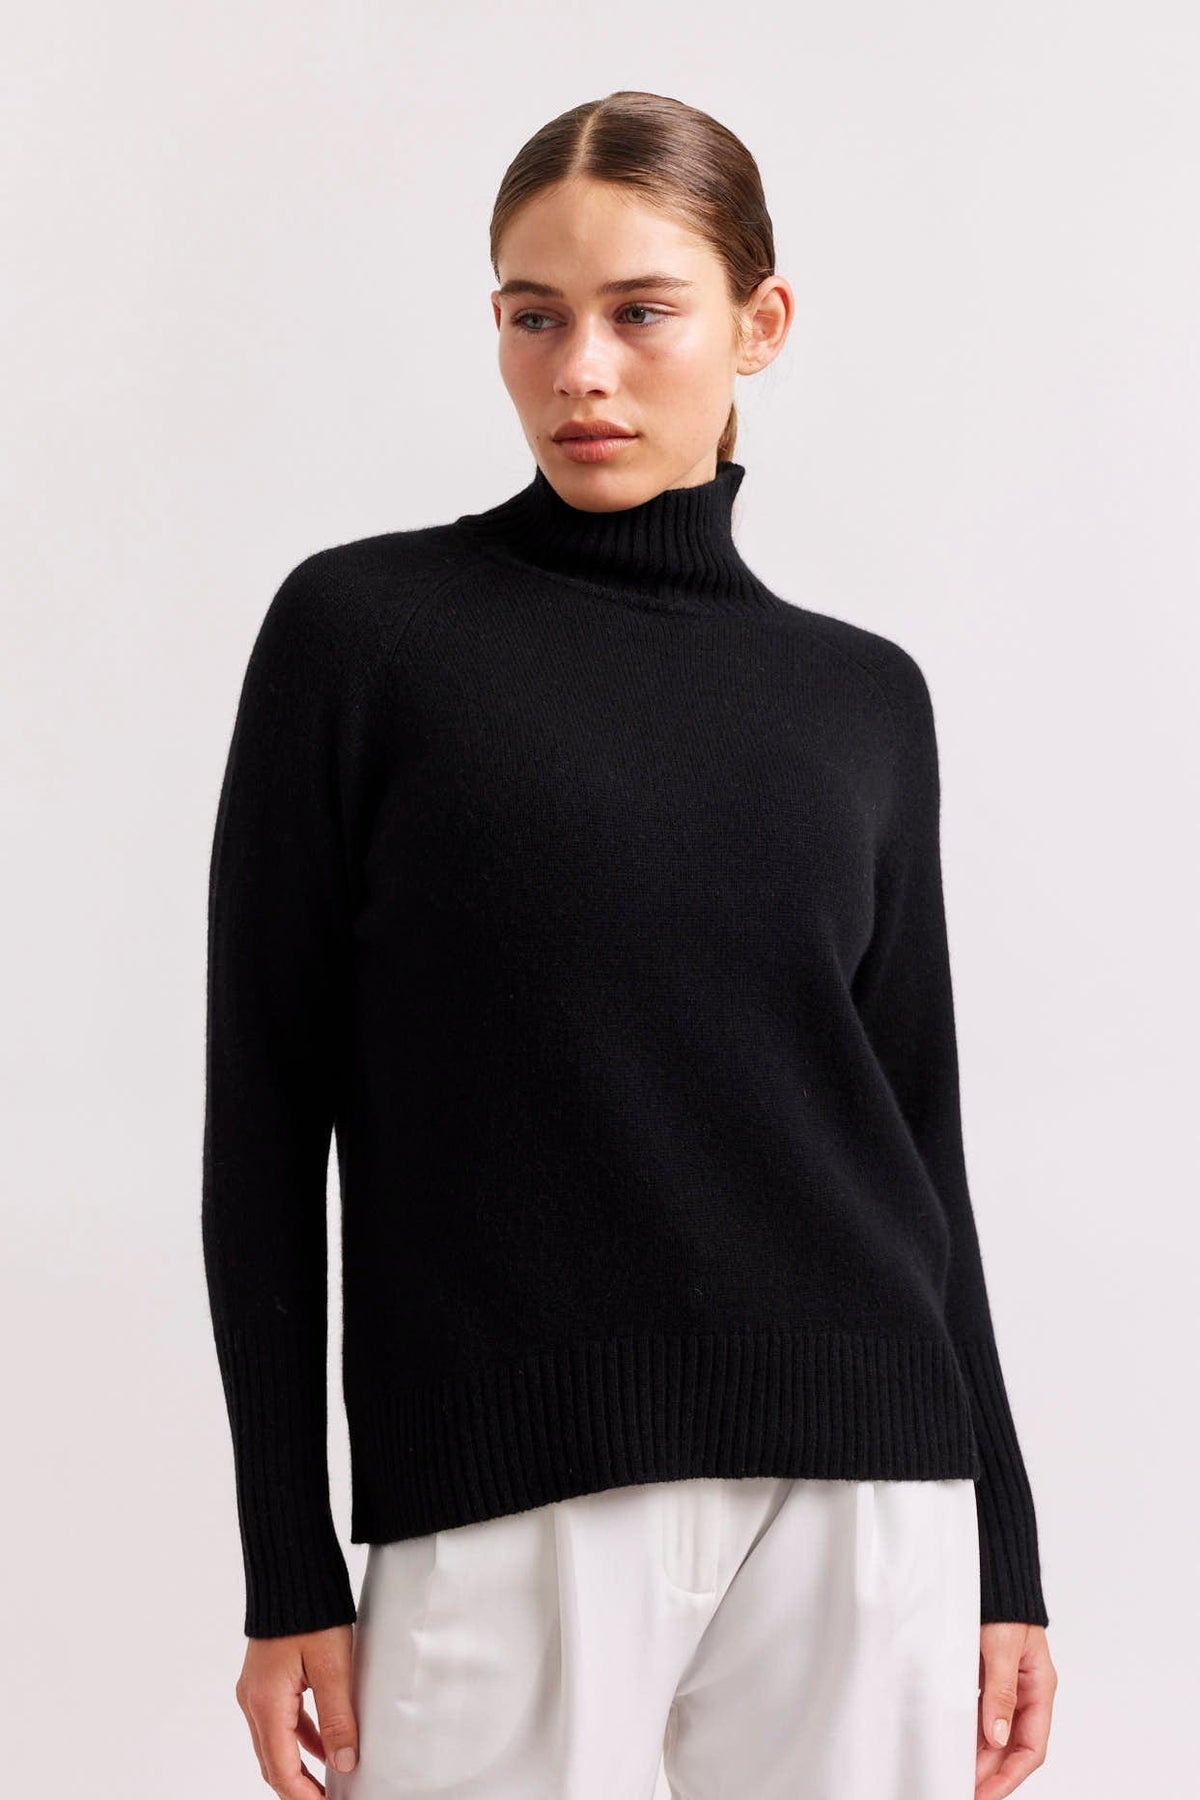 Alessandra Fifi Polo Cashmere Sweater in Black